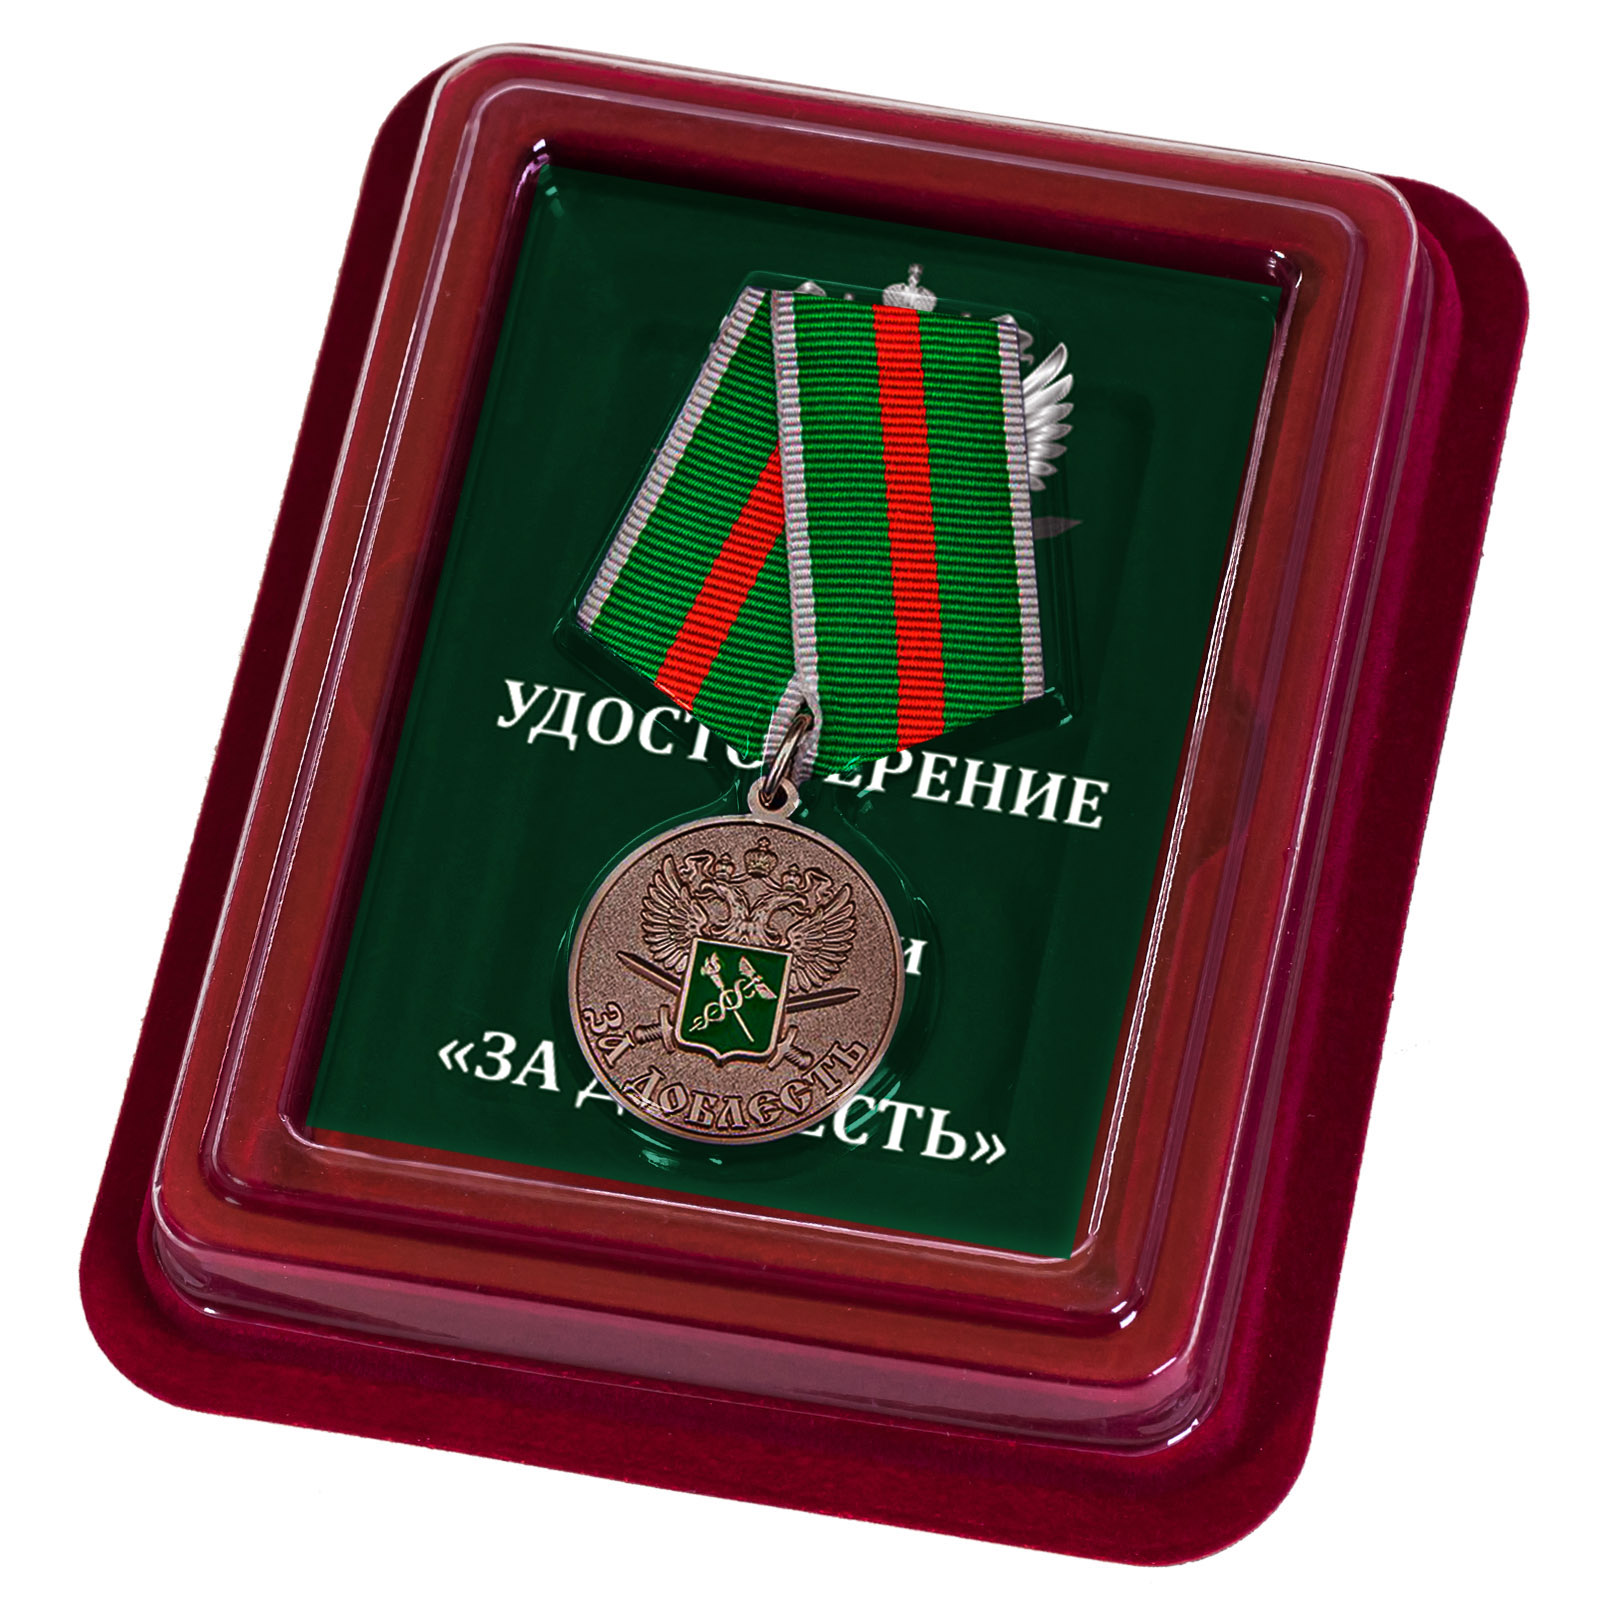 Медаль ФТС "За доблесть" в футляре